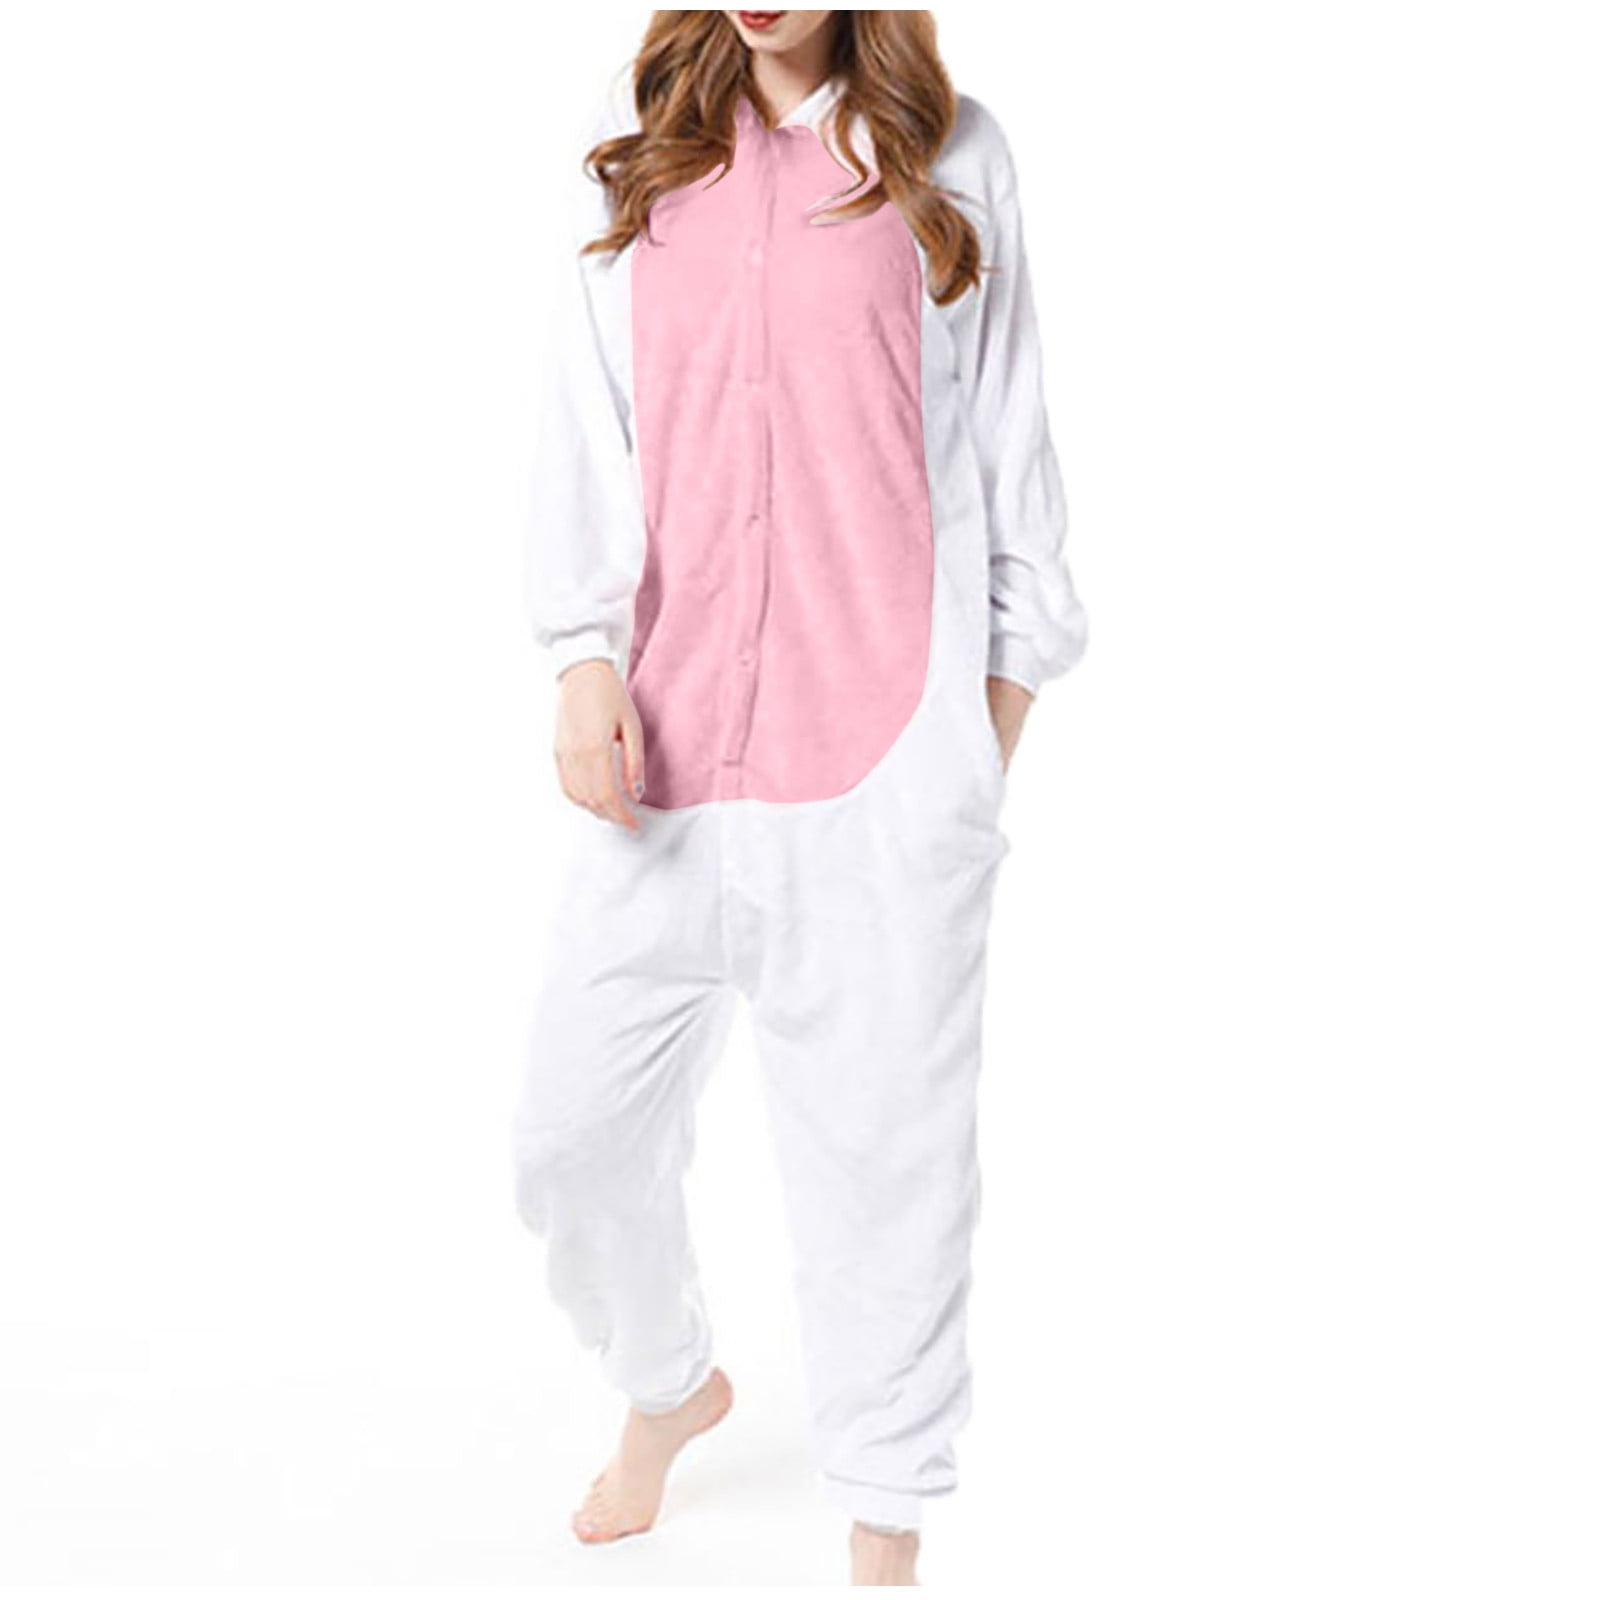 Sweet Bunny Hooded Onesies Women Pajamas Cute Pijama Winter Warm